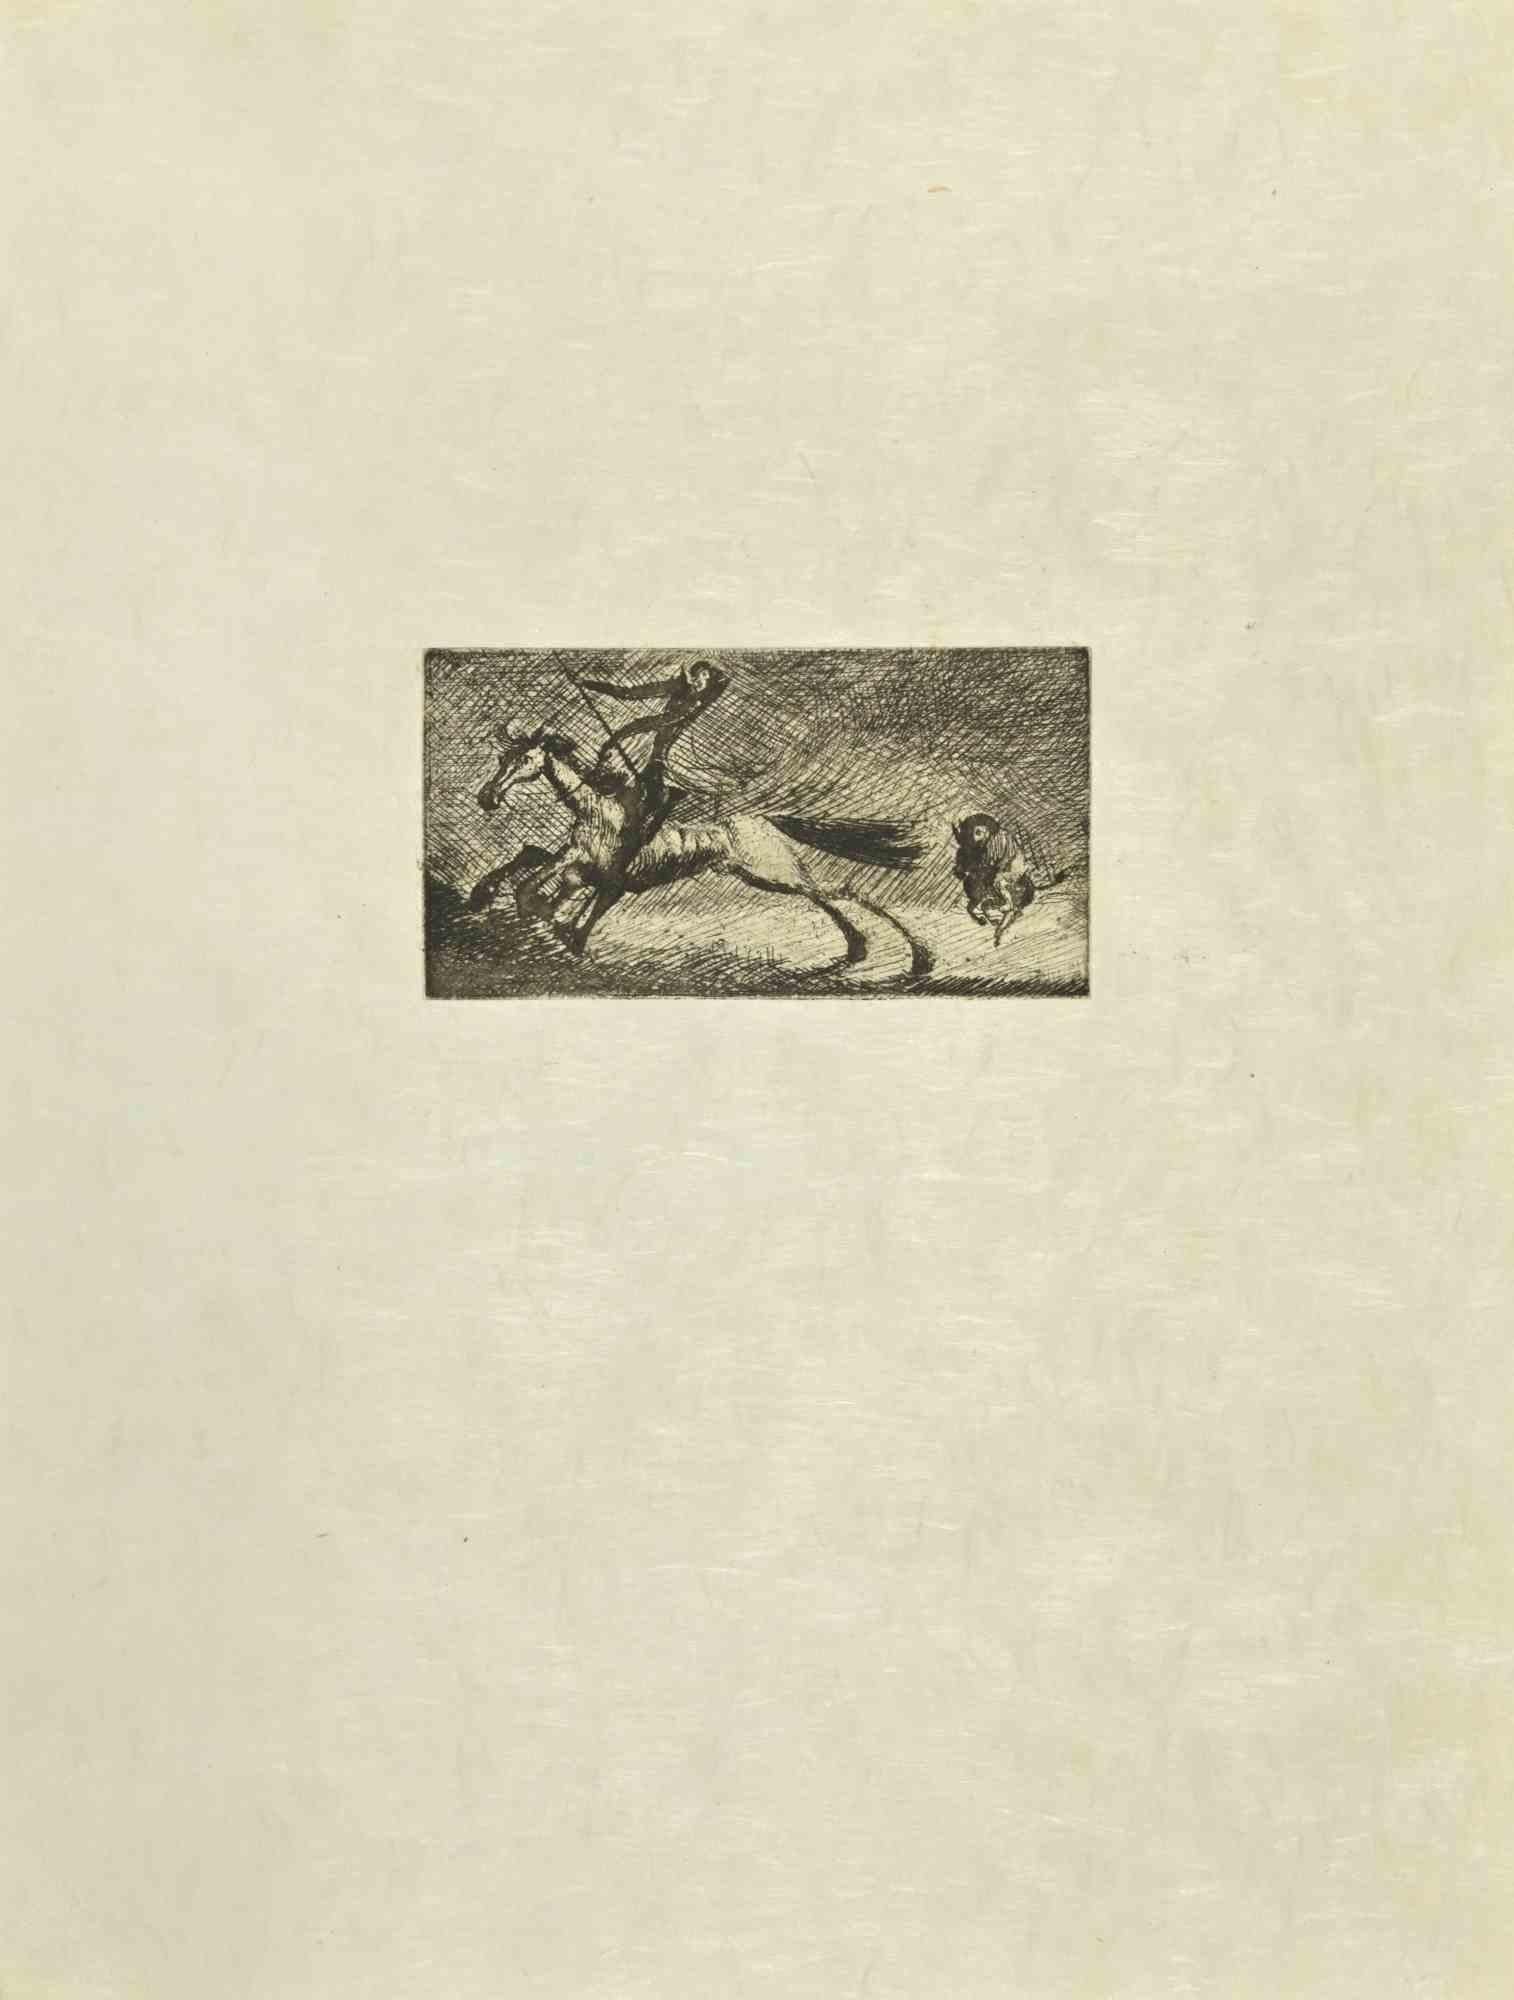 Don Quijote im Galopp ist eine Radierung und Kaltnadelradierung auf elfenbeinfarbenem Japanpapier von Wladyslaw Jahl aus dem Jahr 1951.

Es gehört zu einer limitierten Auflage von 125 Exemplaren.

Gute Bedingungen.

Das Kunstwerk stellt eine